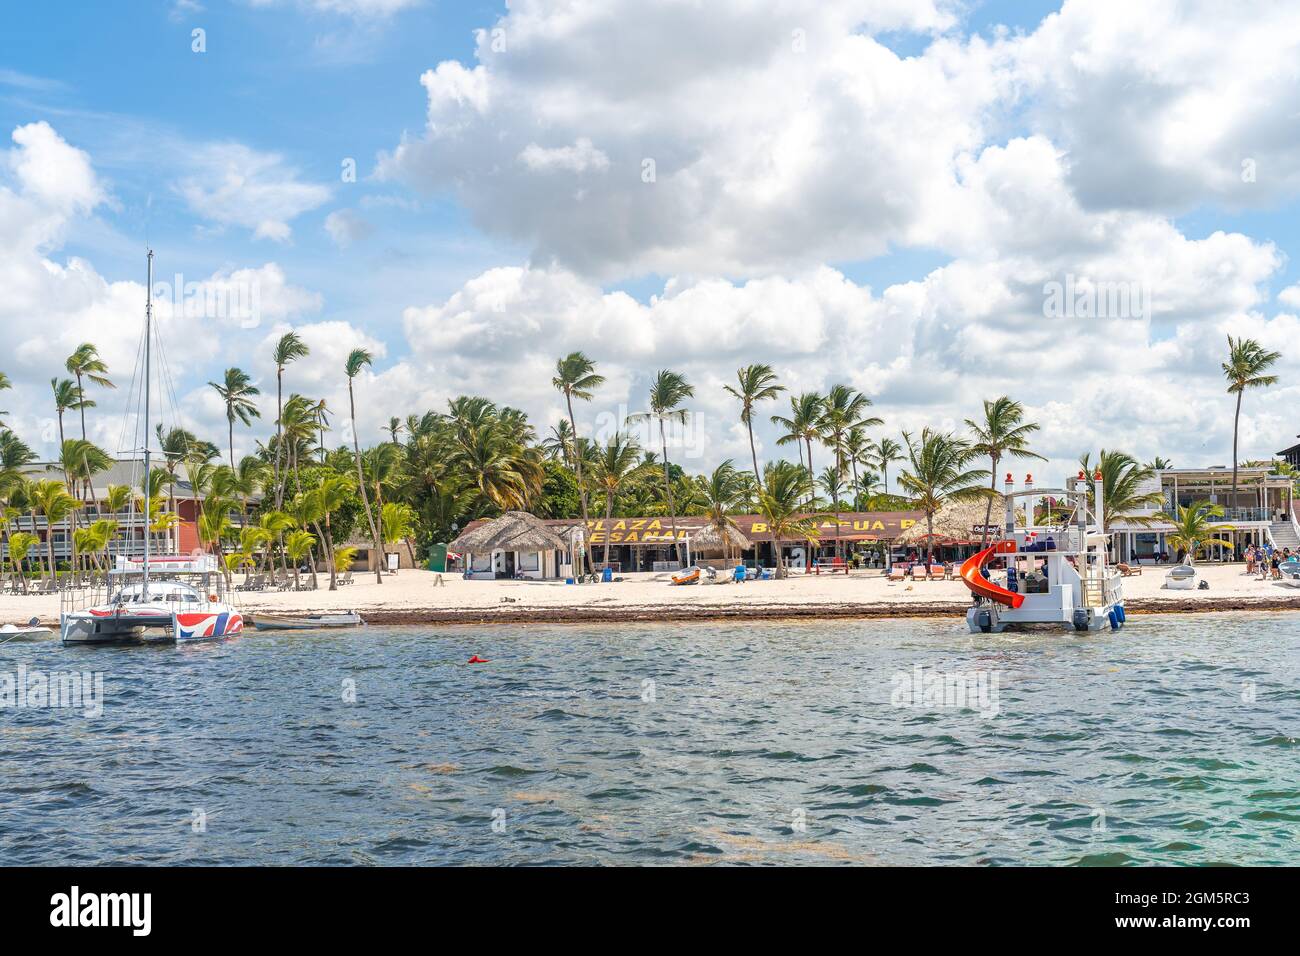 Dominican Beach Plaza mit Palmen Wasserbooten und wunderschönen weißen Sandstränden. Stockfoto